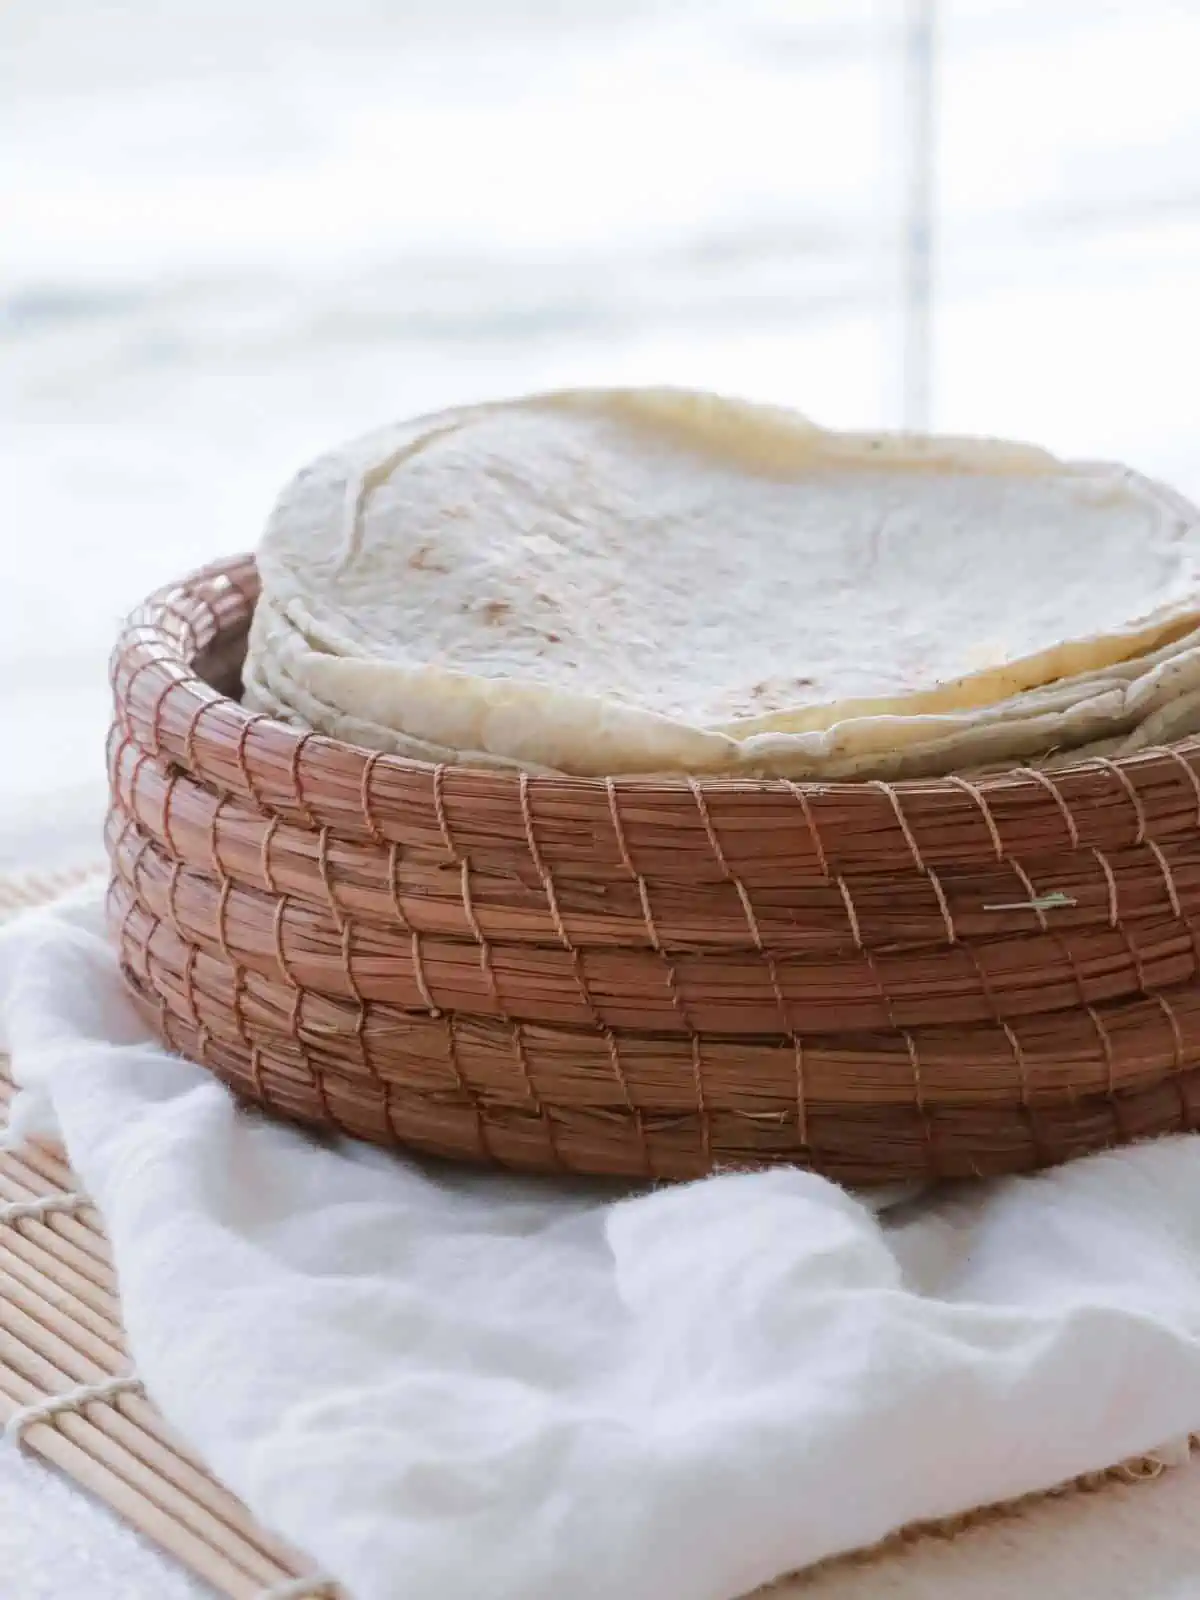 Vegan flour tortillas stacked in a woven basket.